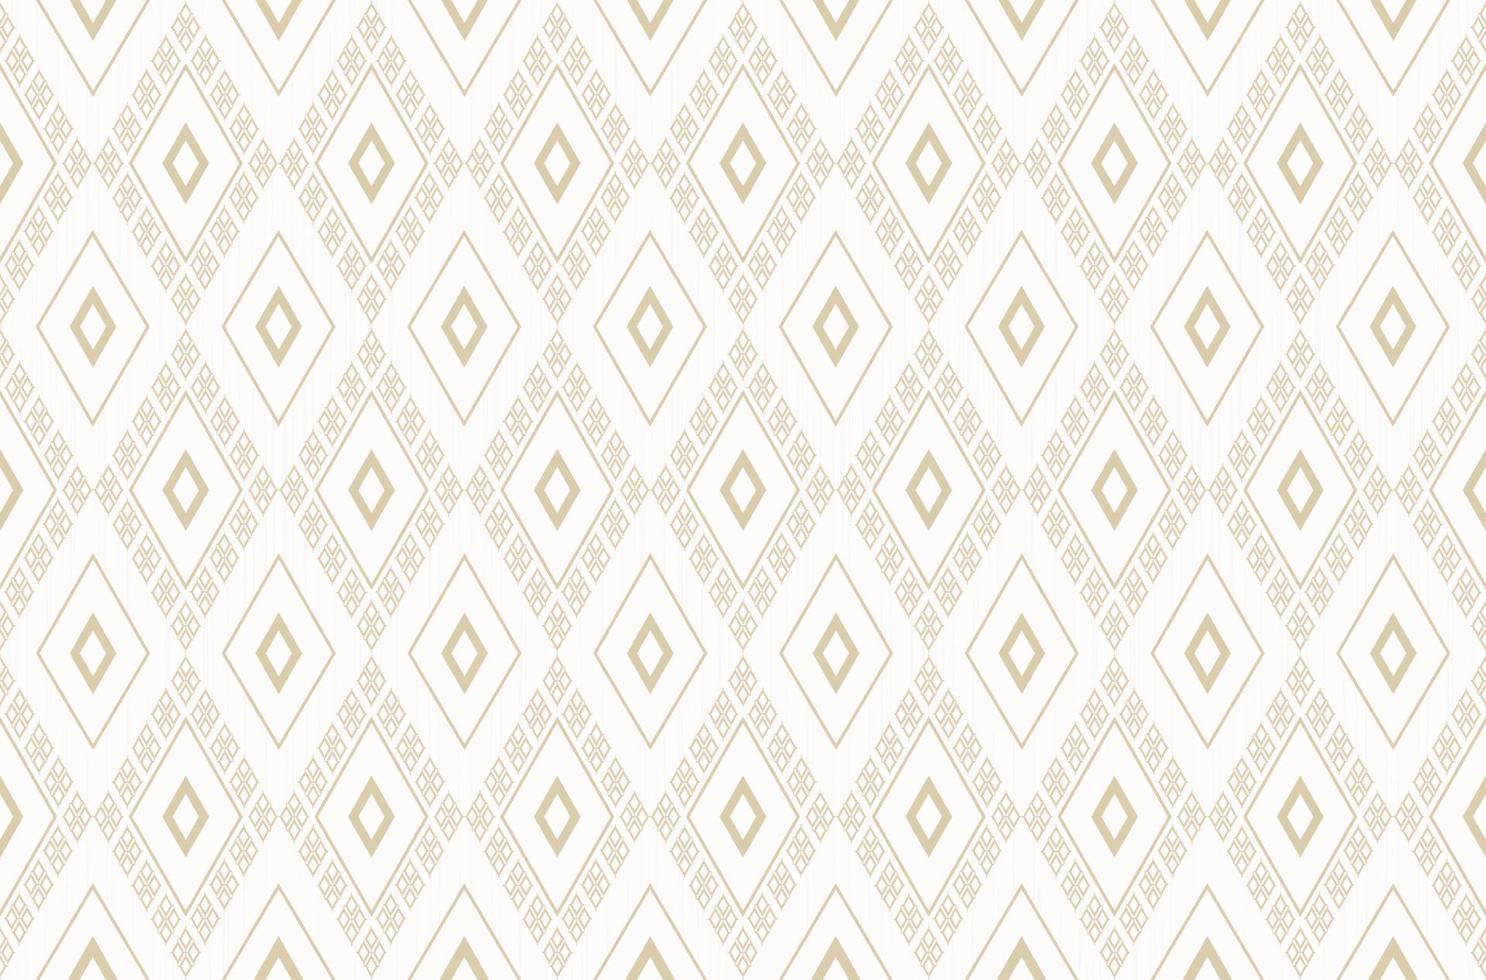 ikat étnica losango forma geométrica padrão sem emenda luz amarelo ouro cor de fundo. uso para tecido, têxtil, elementos de decoração de interiores, embrulho. vetor